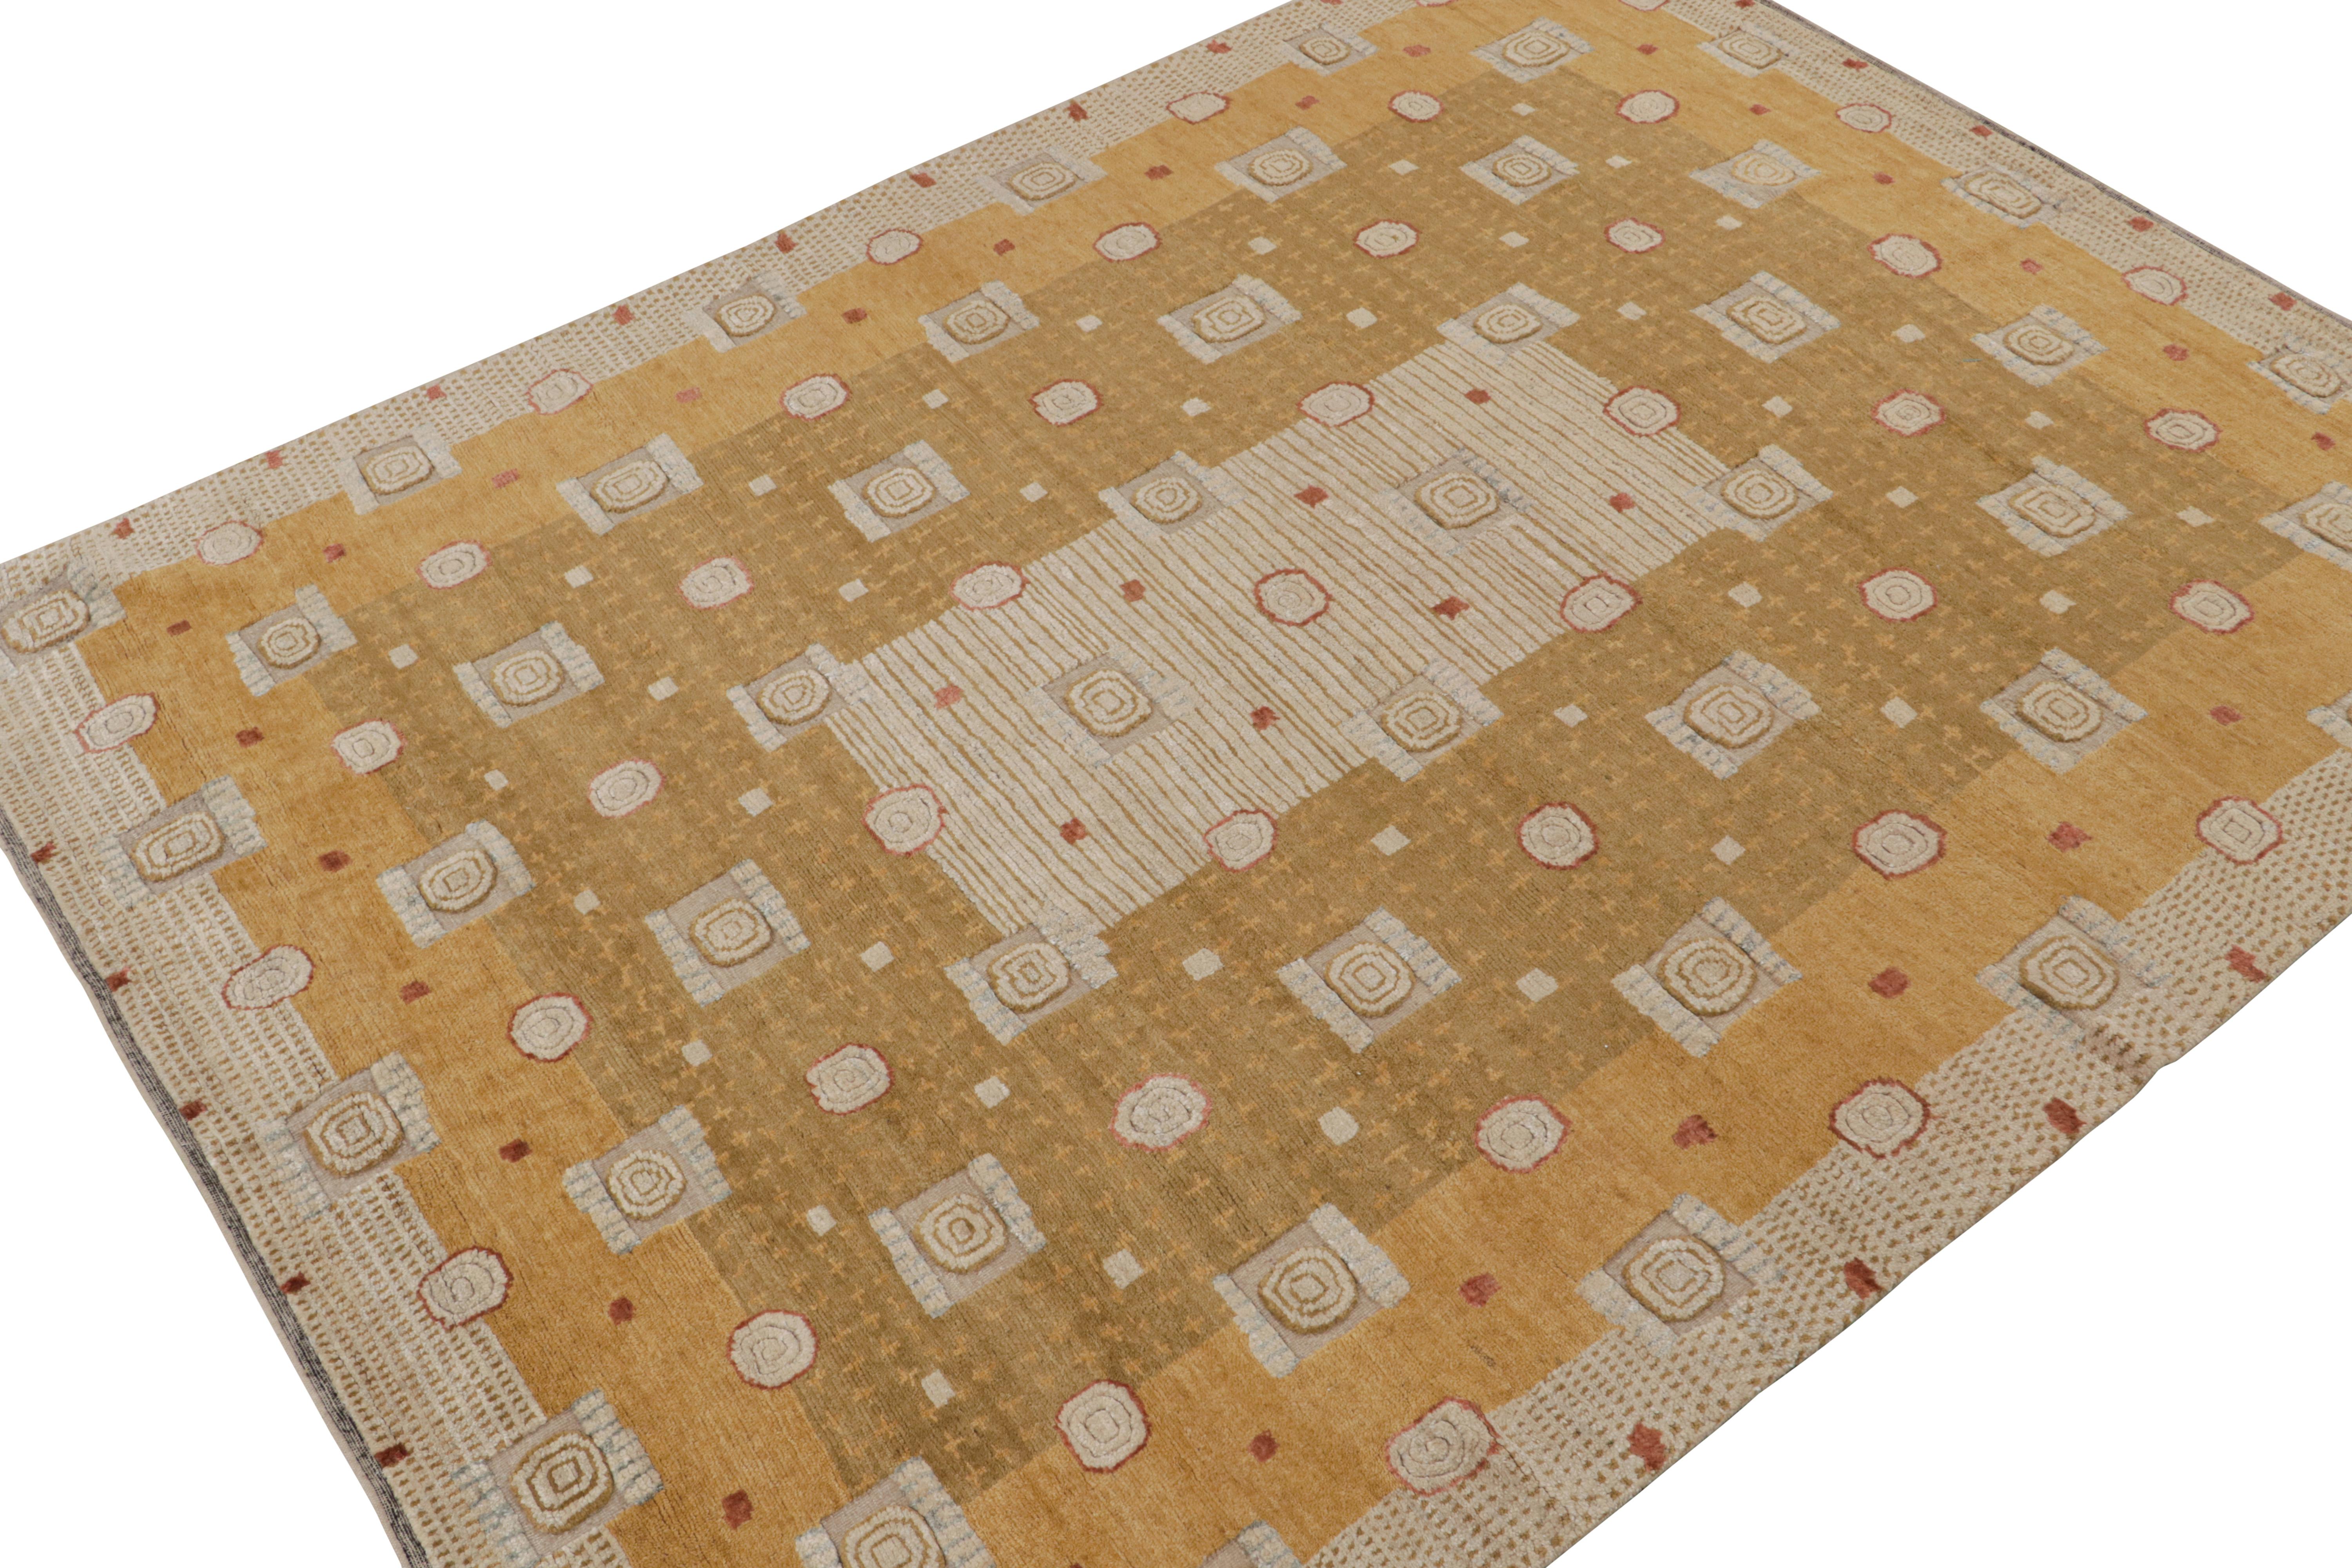 Dieser individuell gestaltete Teppich repräsentiert die Scandinavian Collection'S von Rug & Kilim - eine moderne Interpretation des schwedischen Deco-Stils der Rollakan- und Rya-Teppiche. 

Über das Design:

Diese Fotos zeigen einen 9x12 Teppich in